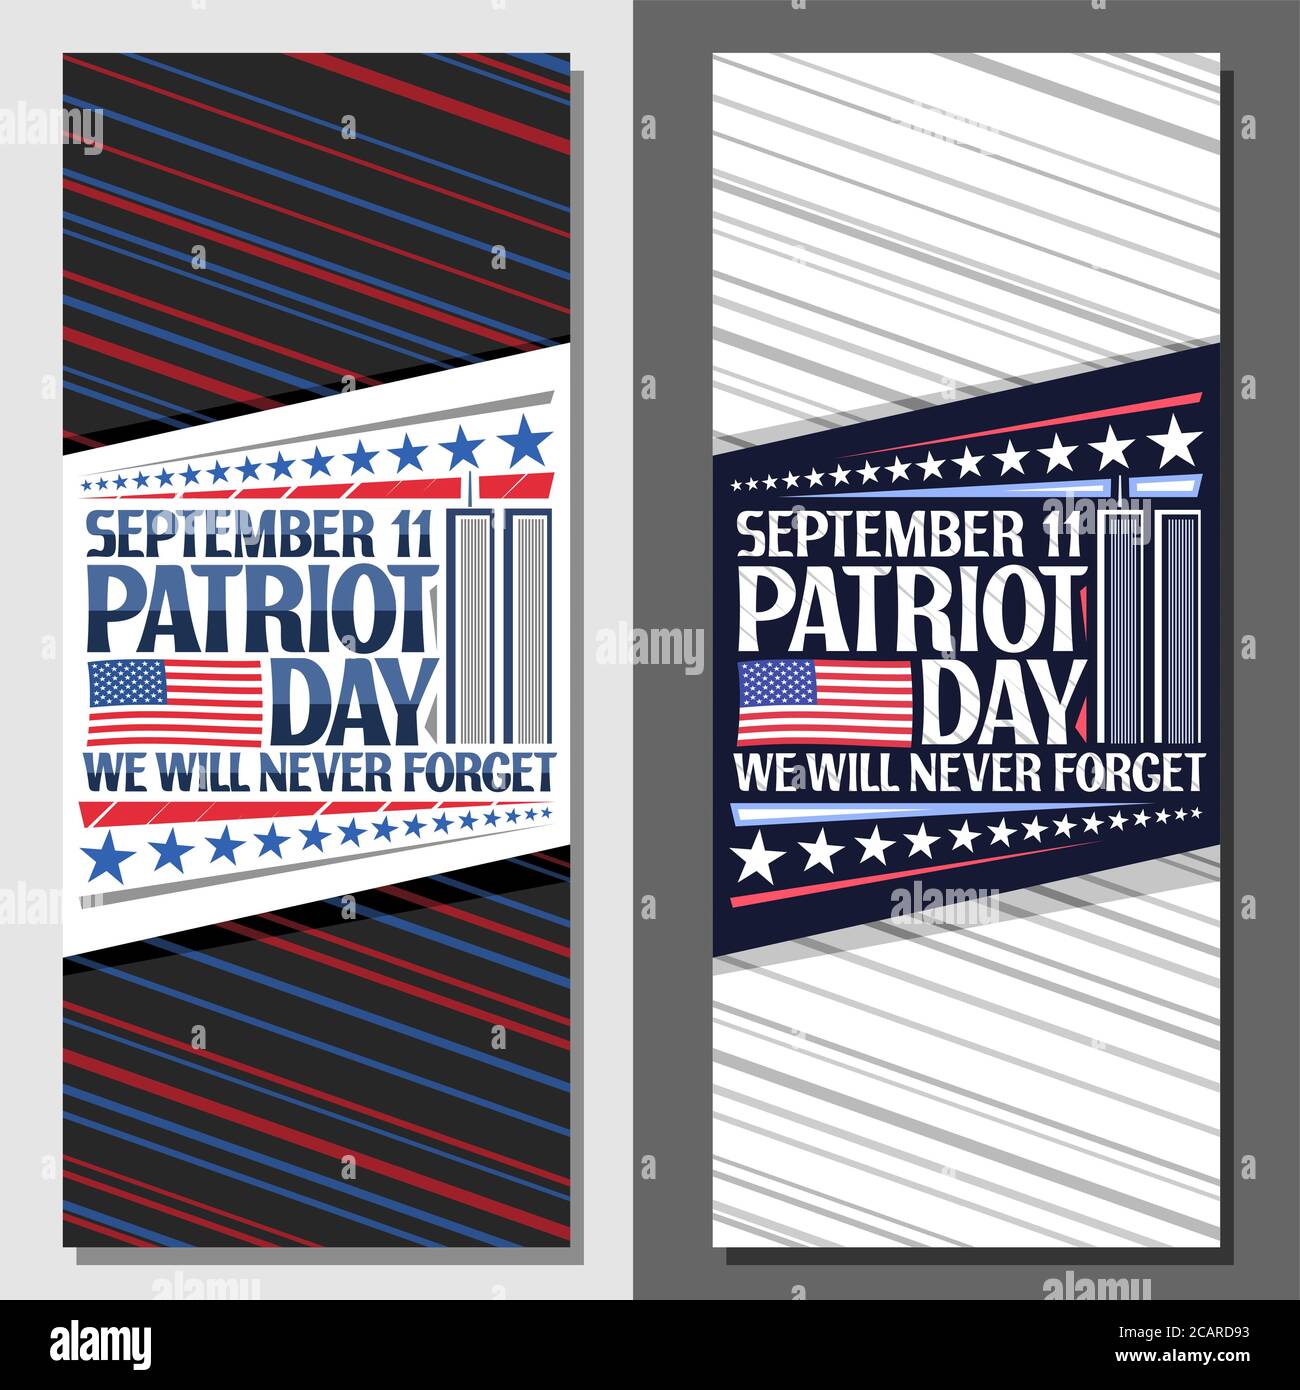 Vektor-Layouts für Patriot Day, dekorative Karte mit Darstellung des Welthandelszentrums, amerikanische Flagge, einzigartige Beschriftung für Worte september 11, patri Stock Vektor